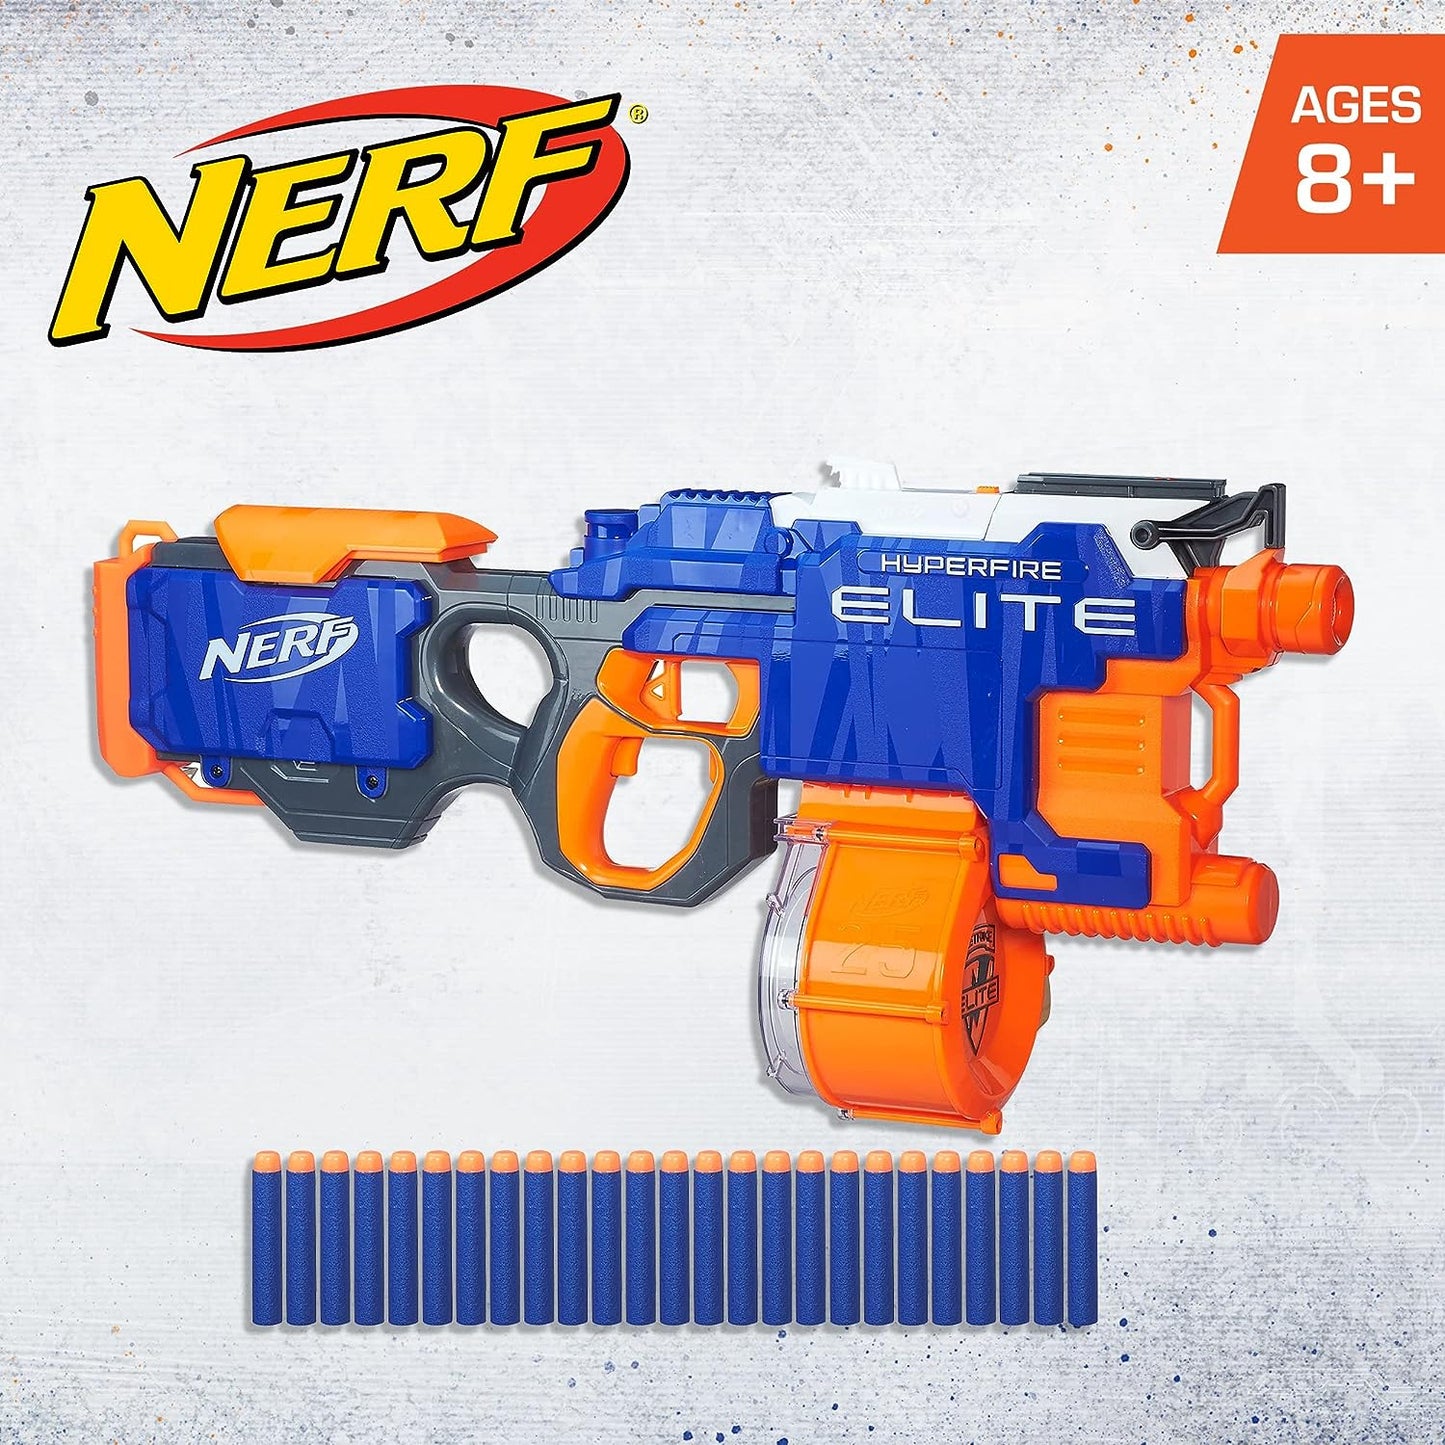 NERF Elite Hyperfire Gun